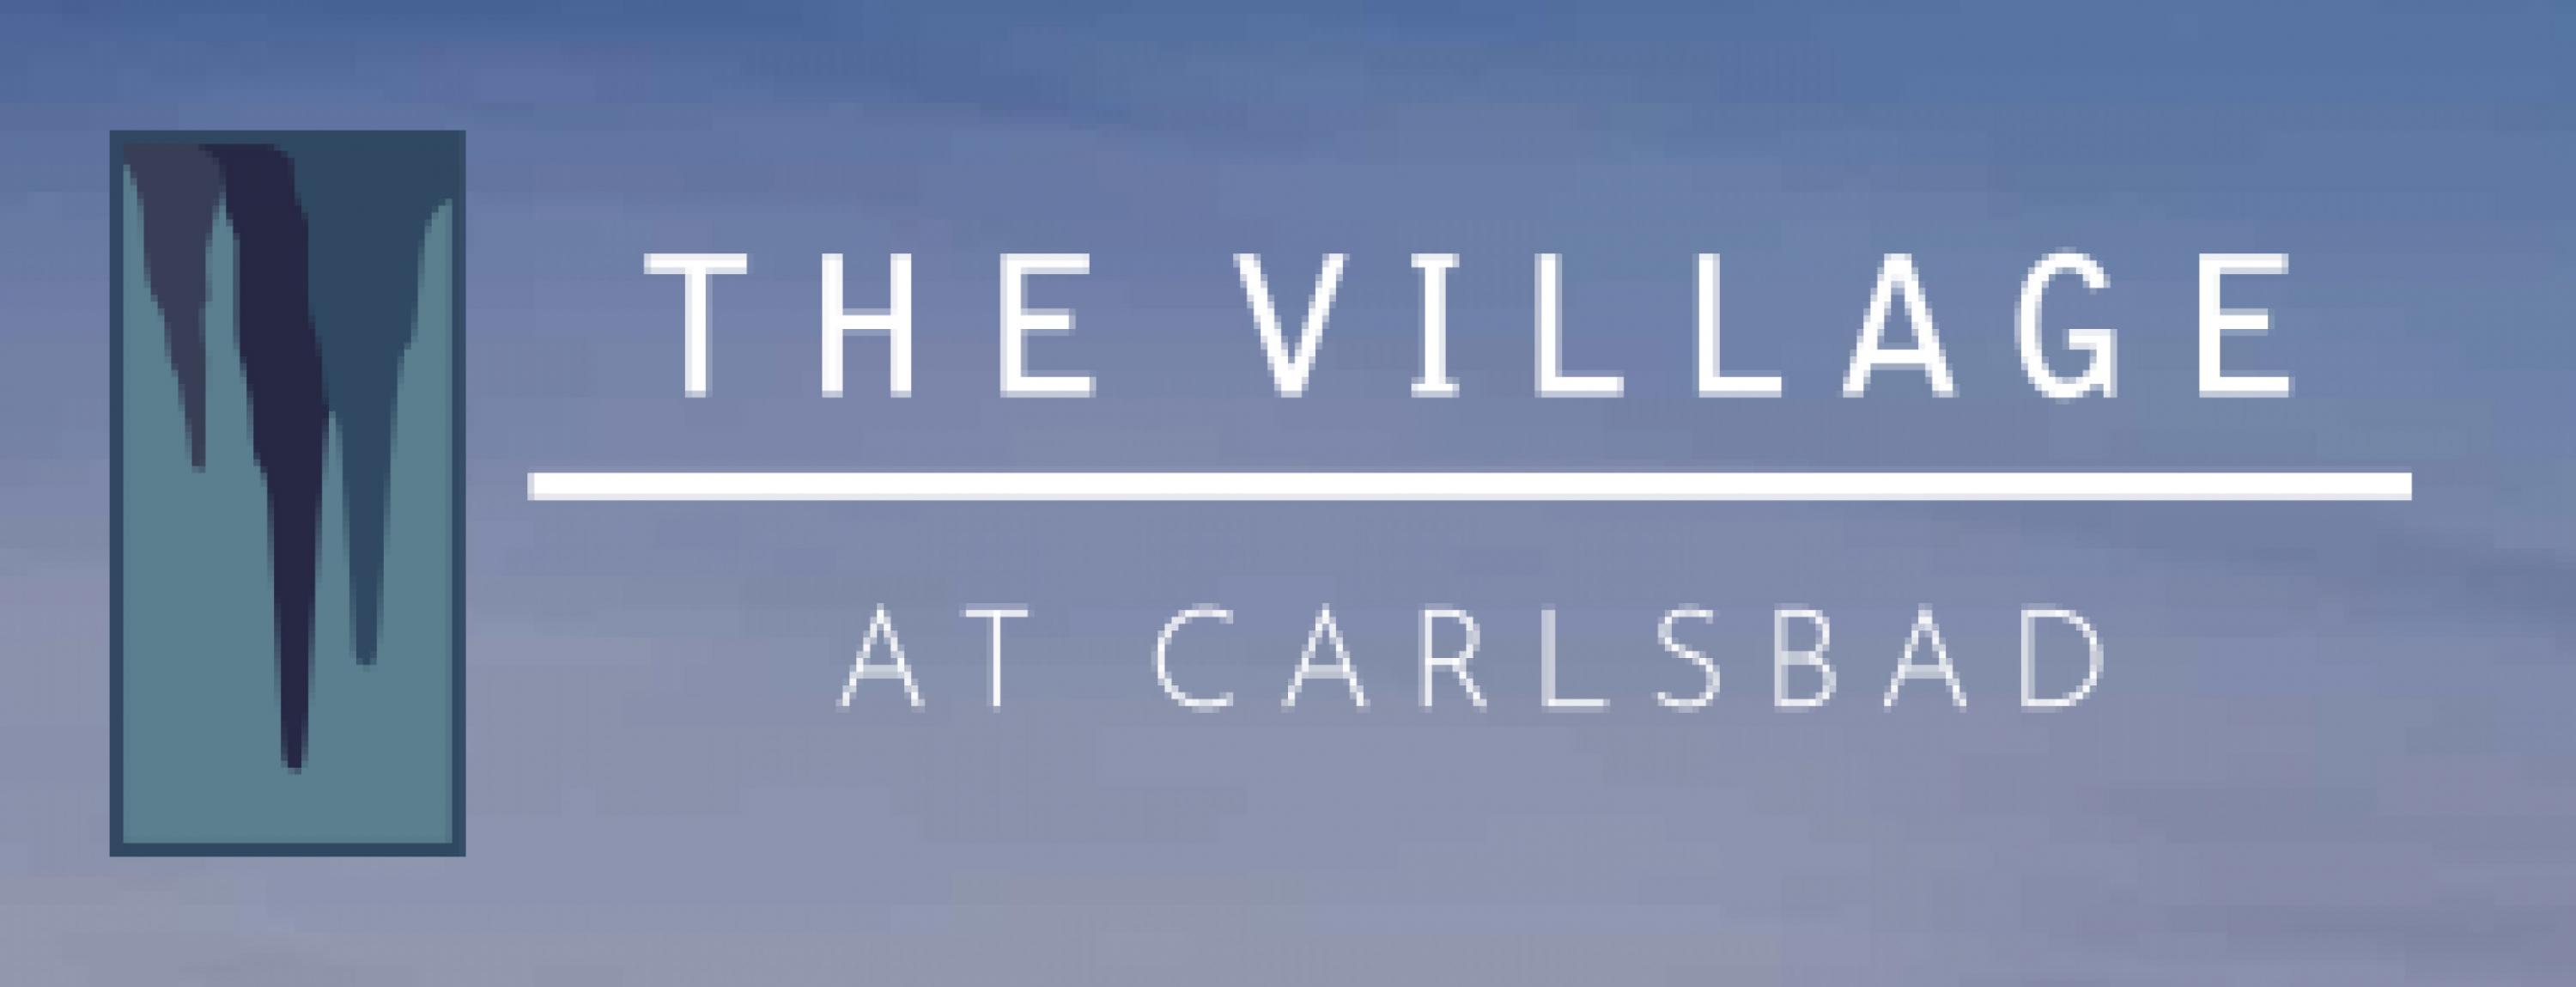 The Village at Carlsbad's Image